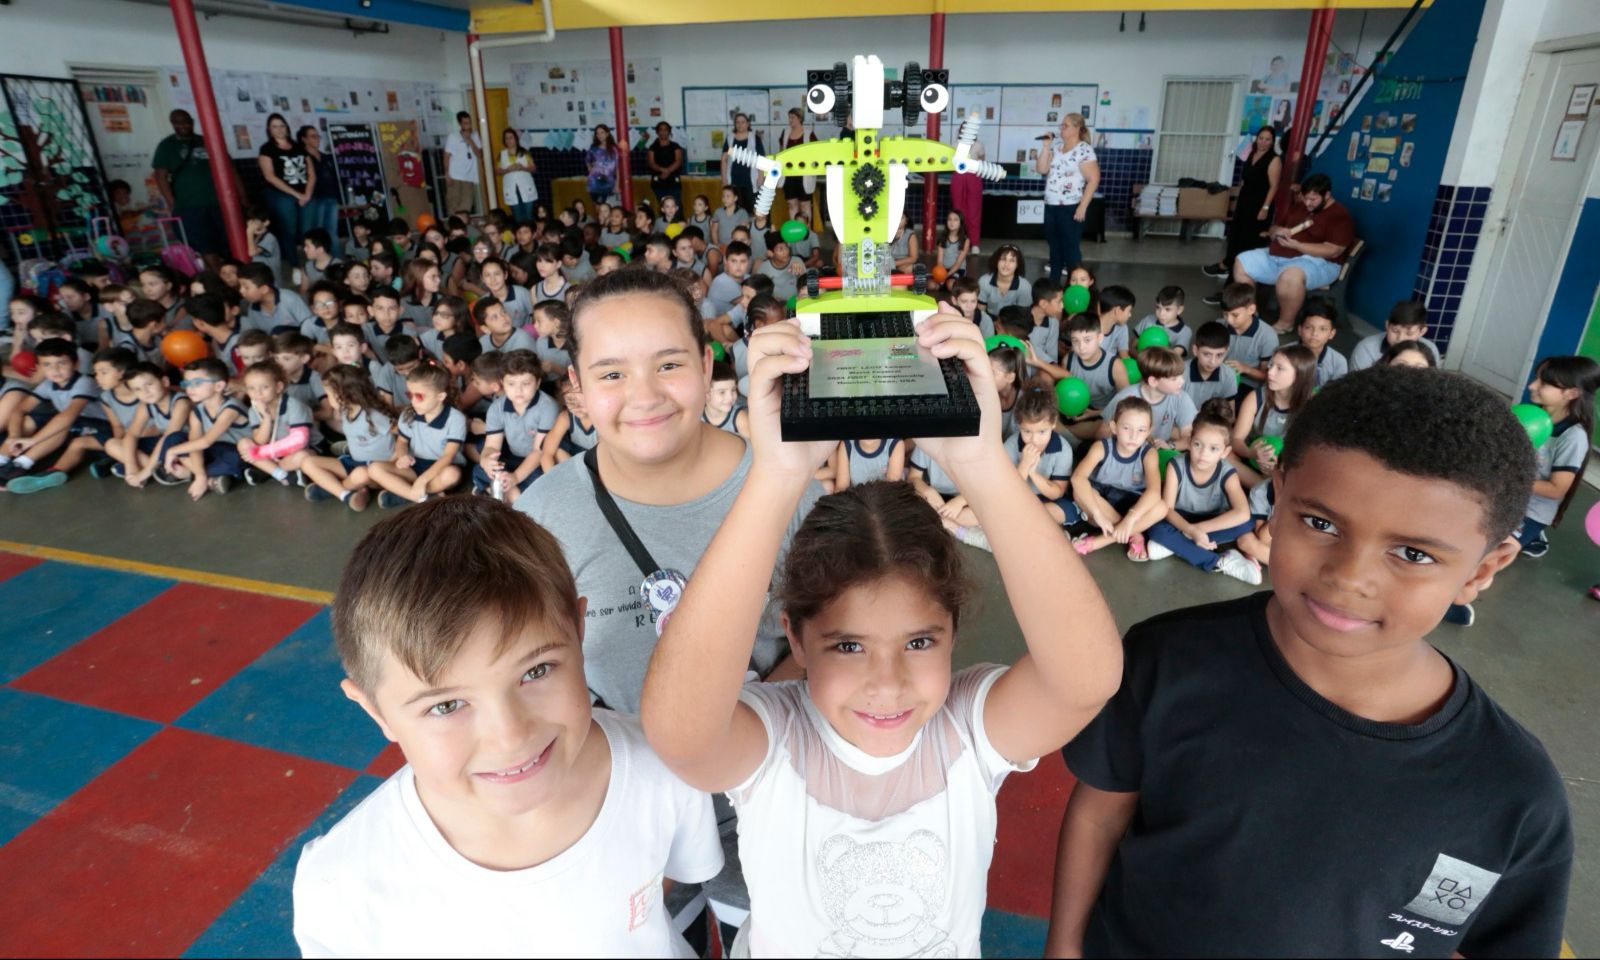 Alunos são recepcionados em Escola Municipal de Joinville após ganharem troféu em evento nos Estados Unidos